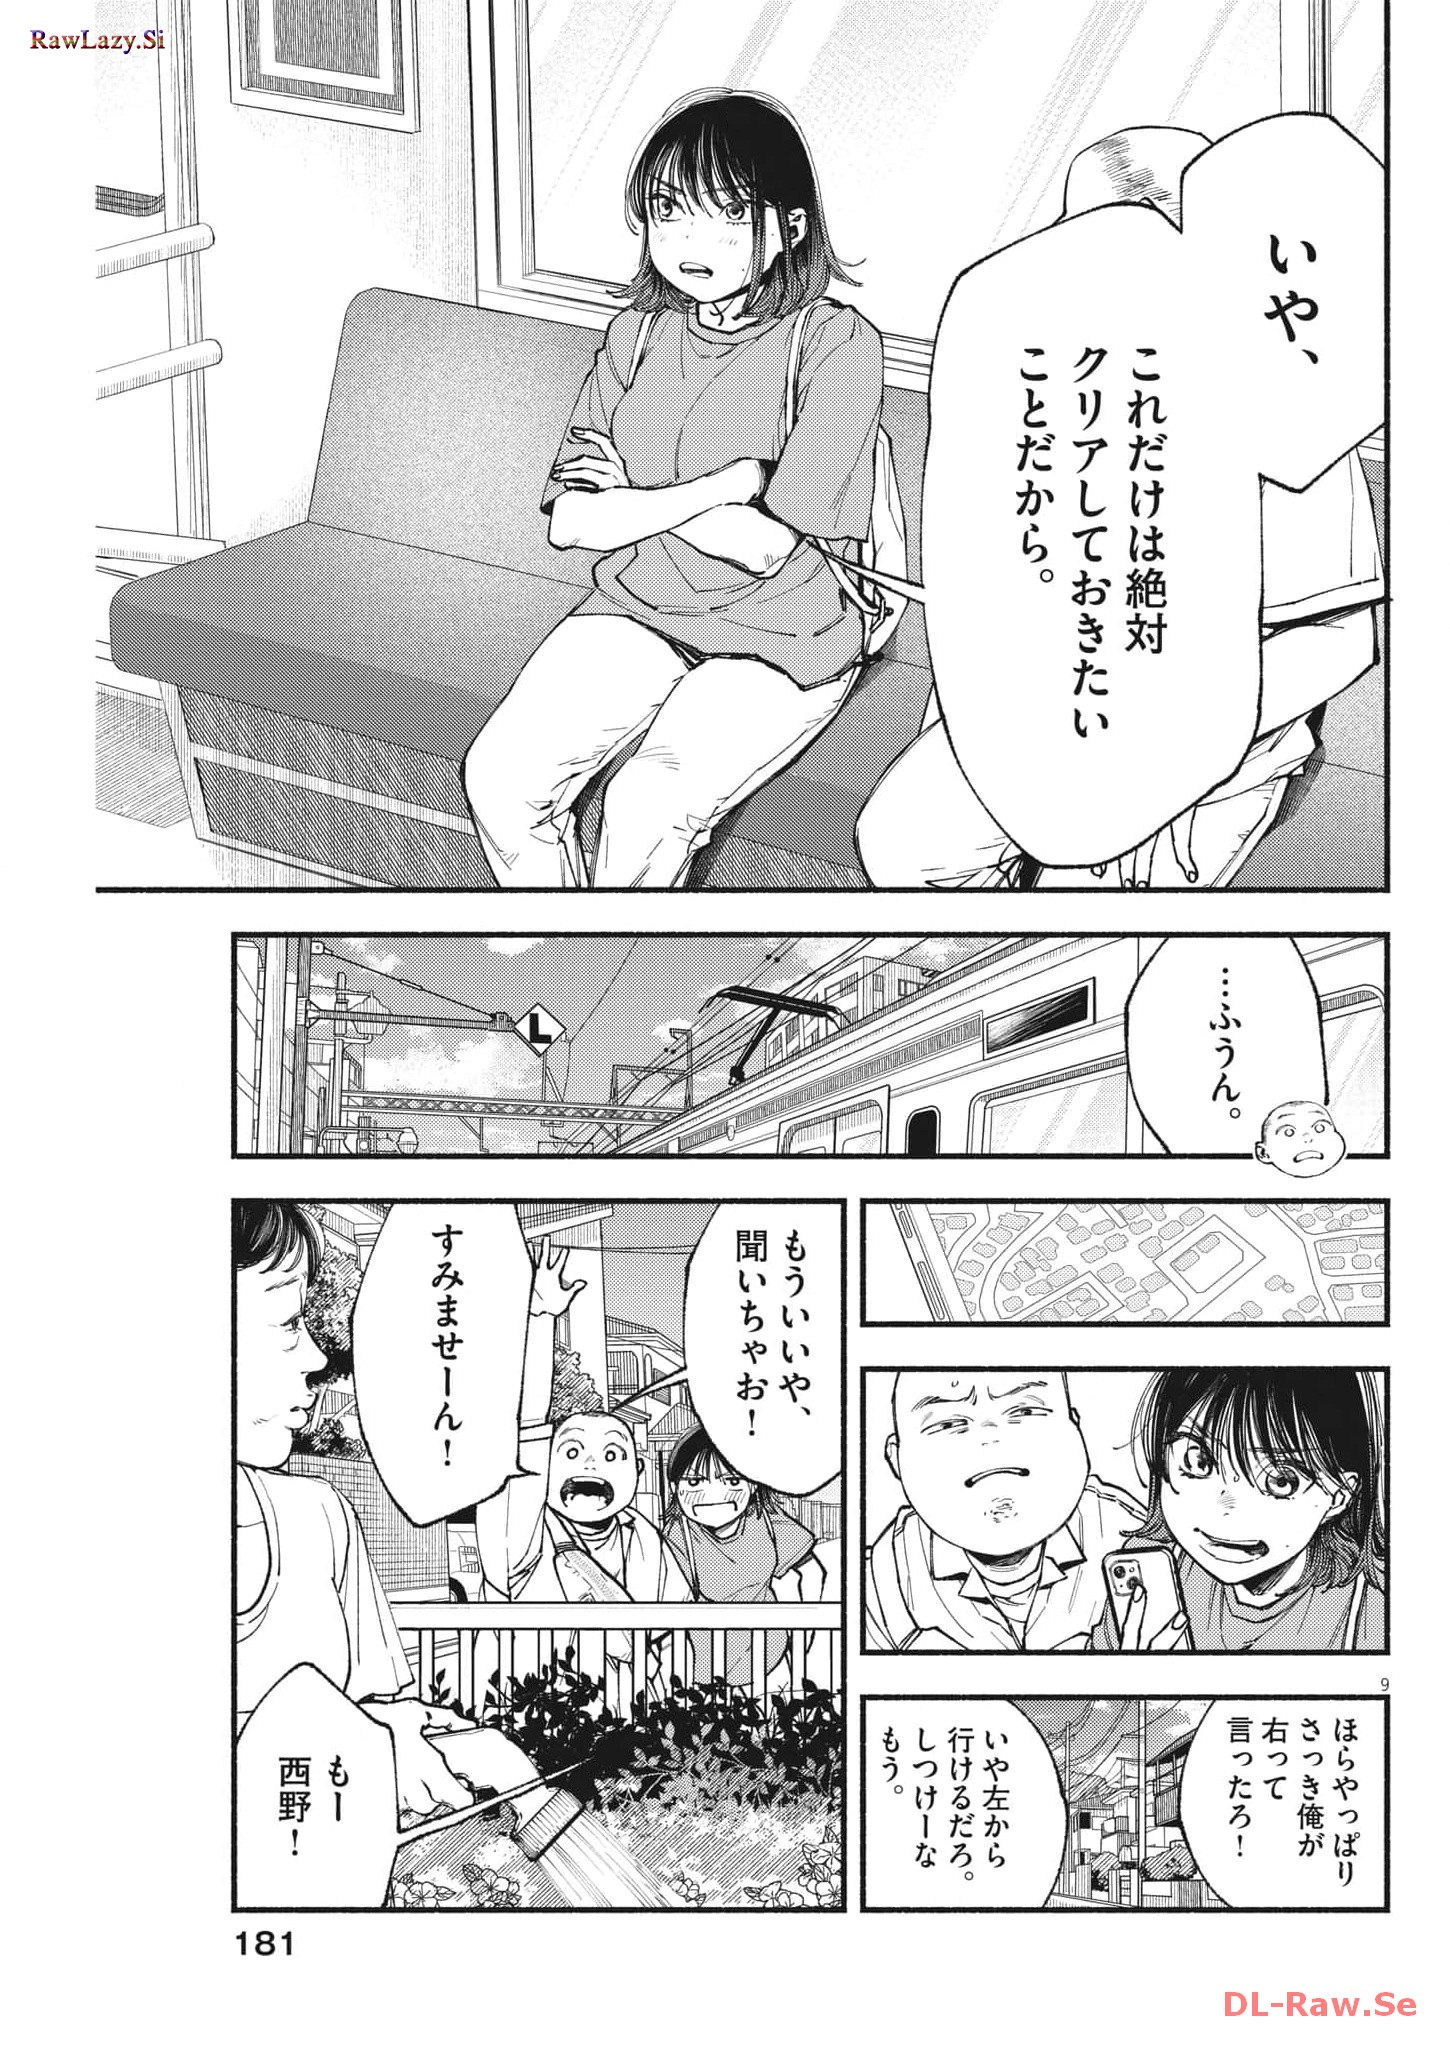 Konoyo wa Tatakau Kachi ga Aru  - Chapter 16 - Page 9